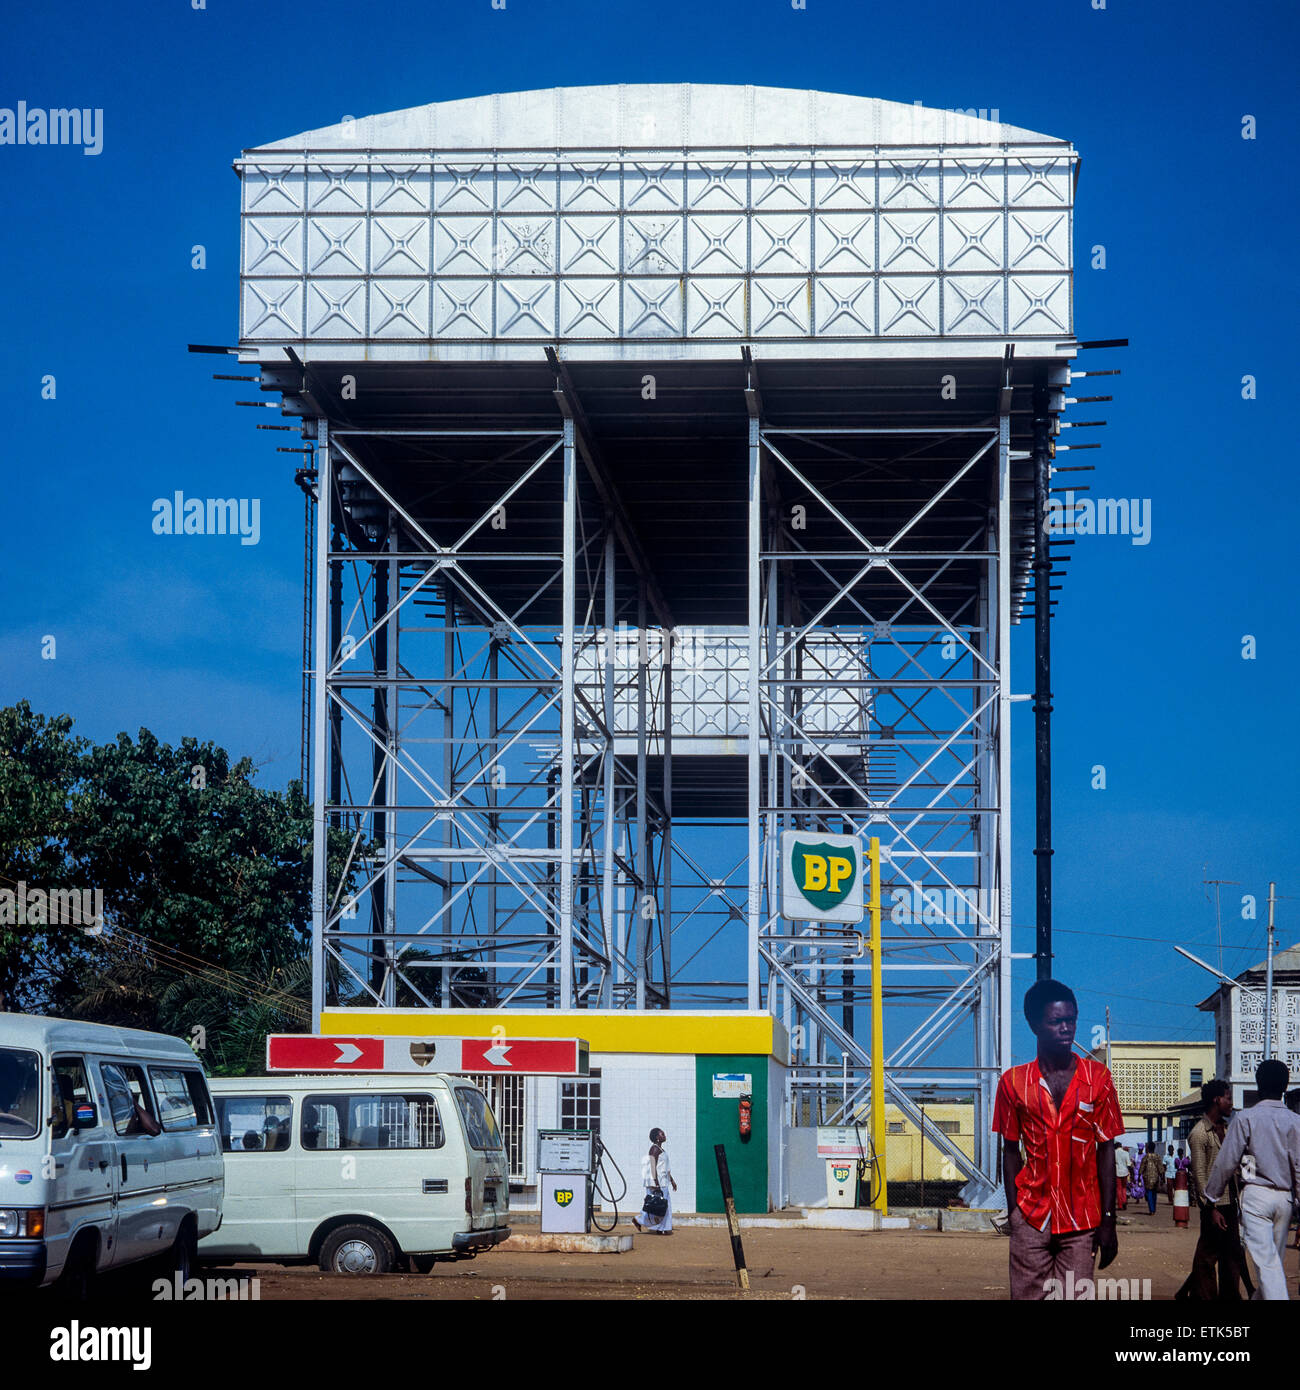 Stazione di servizio BP con serbatoi sopraelevati, Banjul, Gambia, Africa occidentale Foto Stock